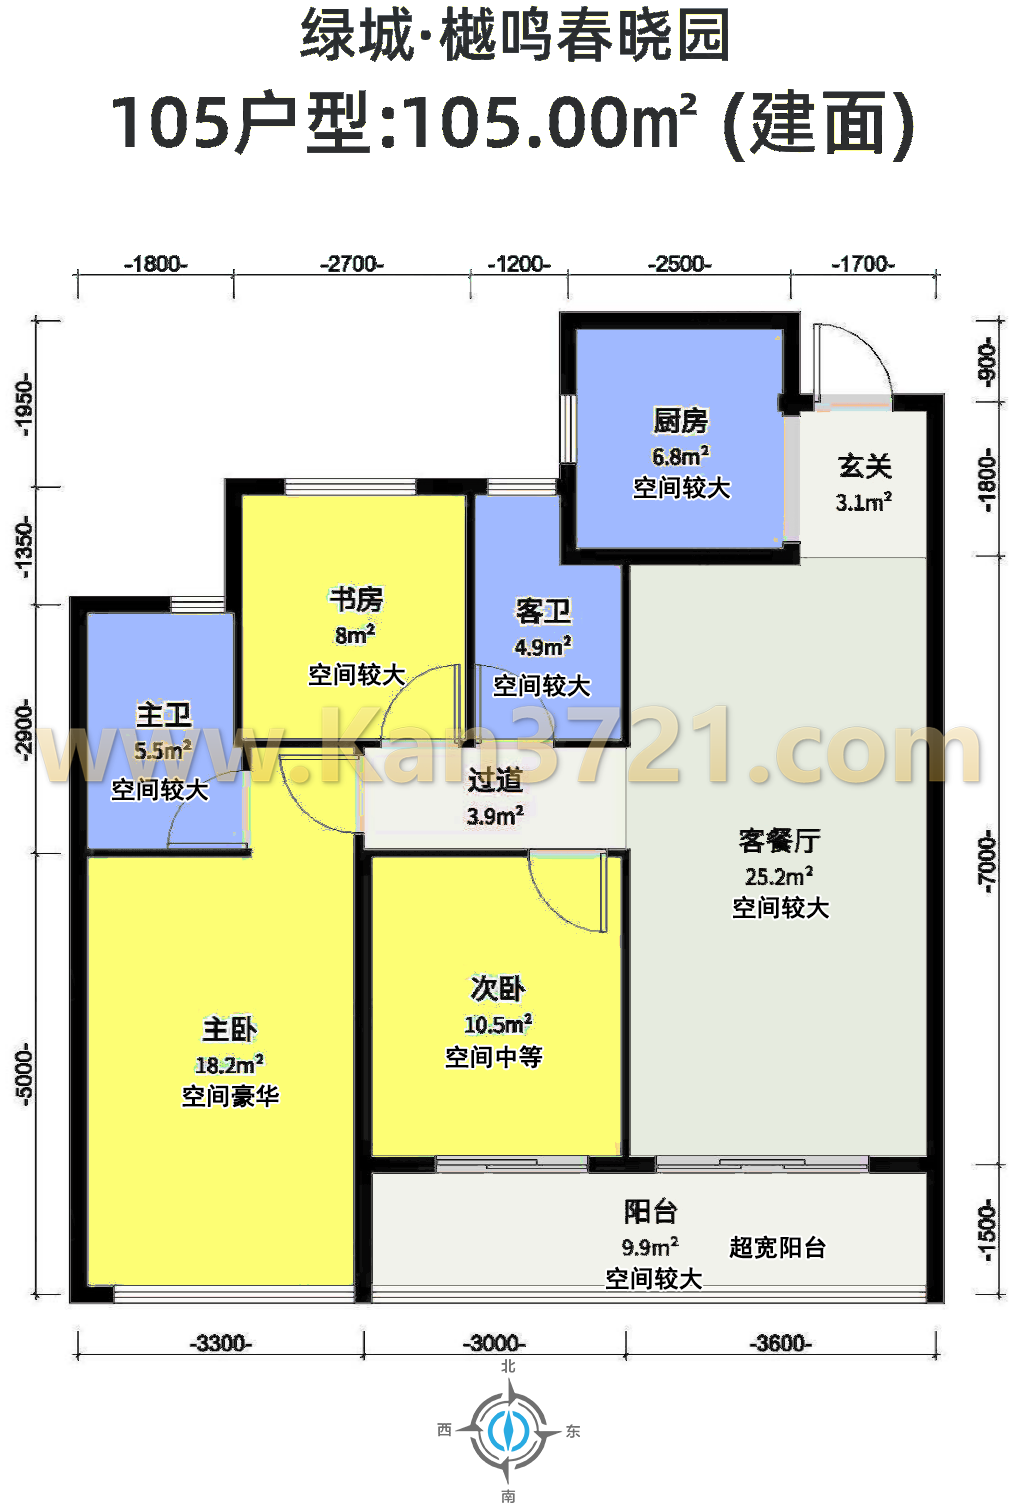 杭州绿城樾鸣春晓园高层105方A-3室2厅2卫